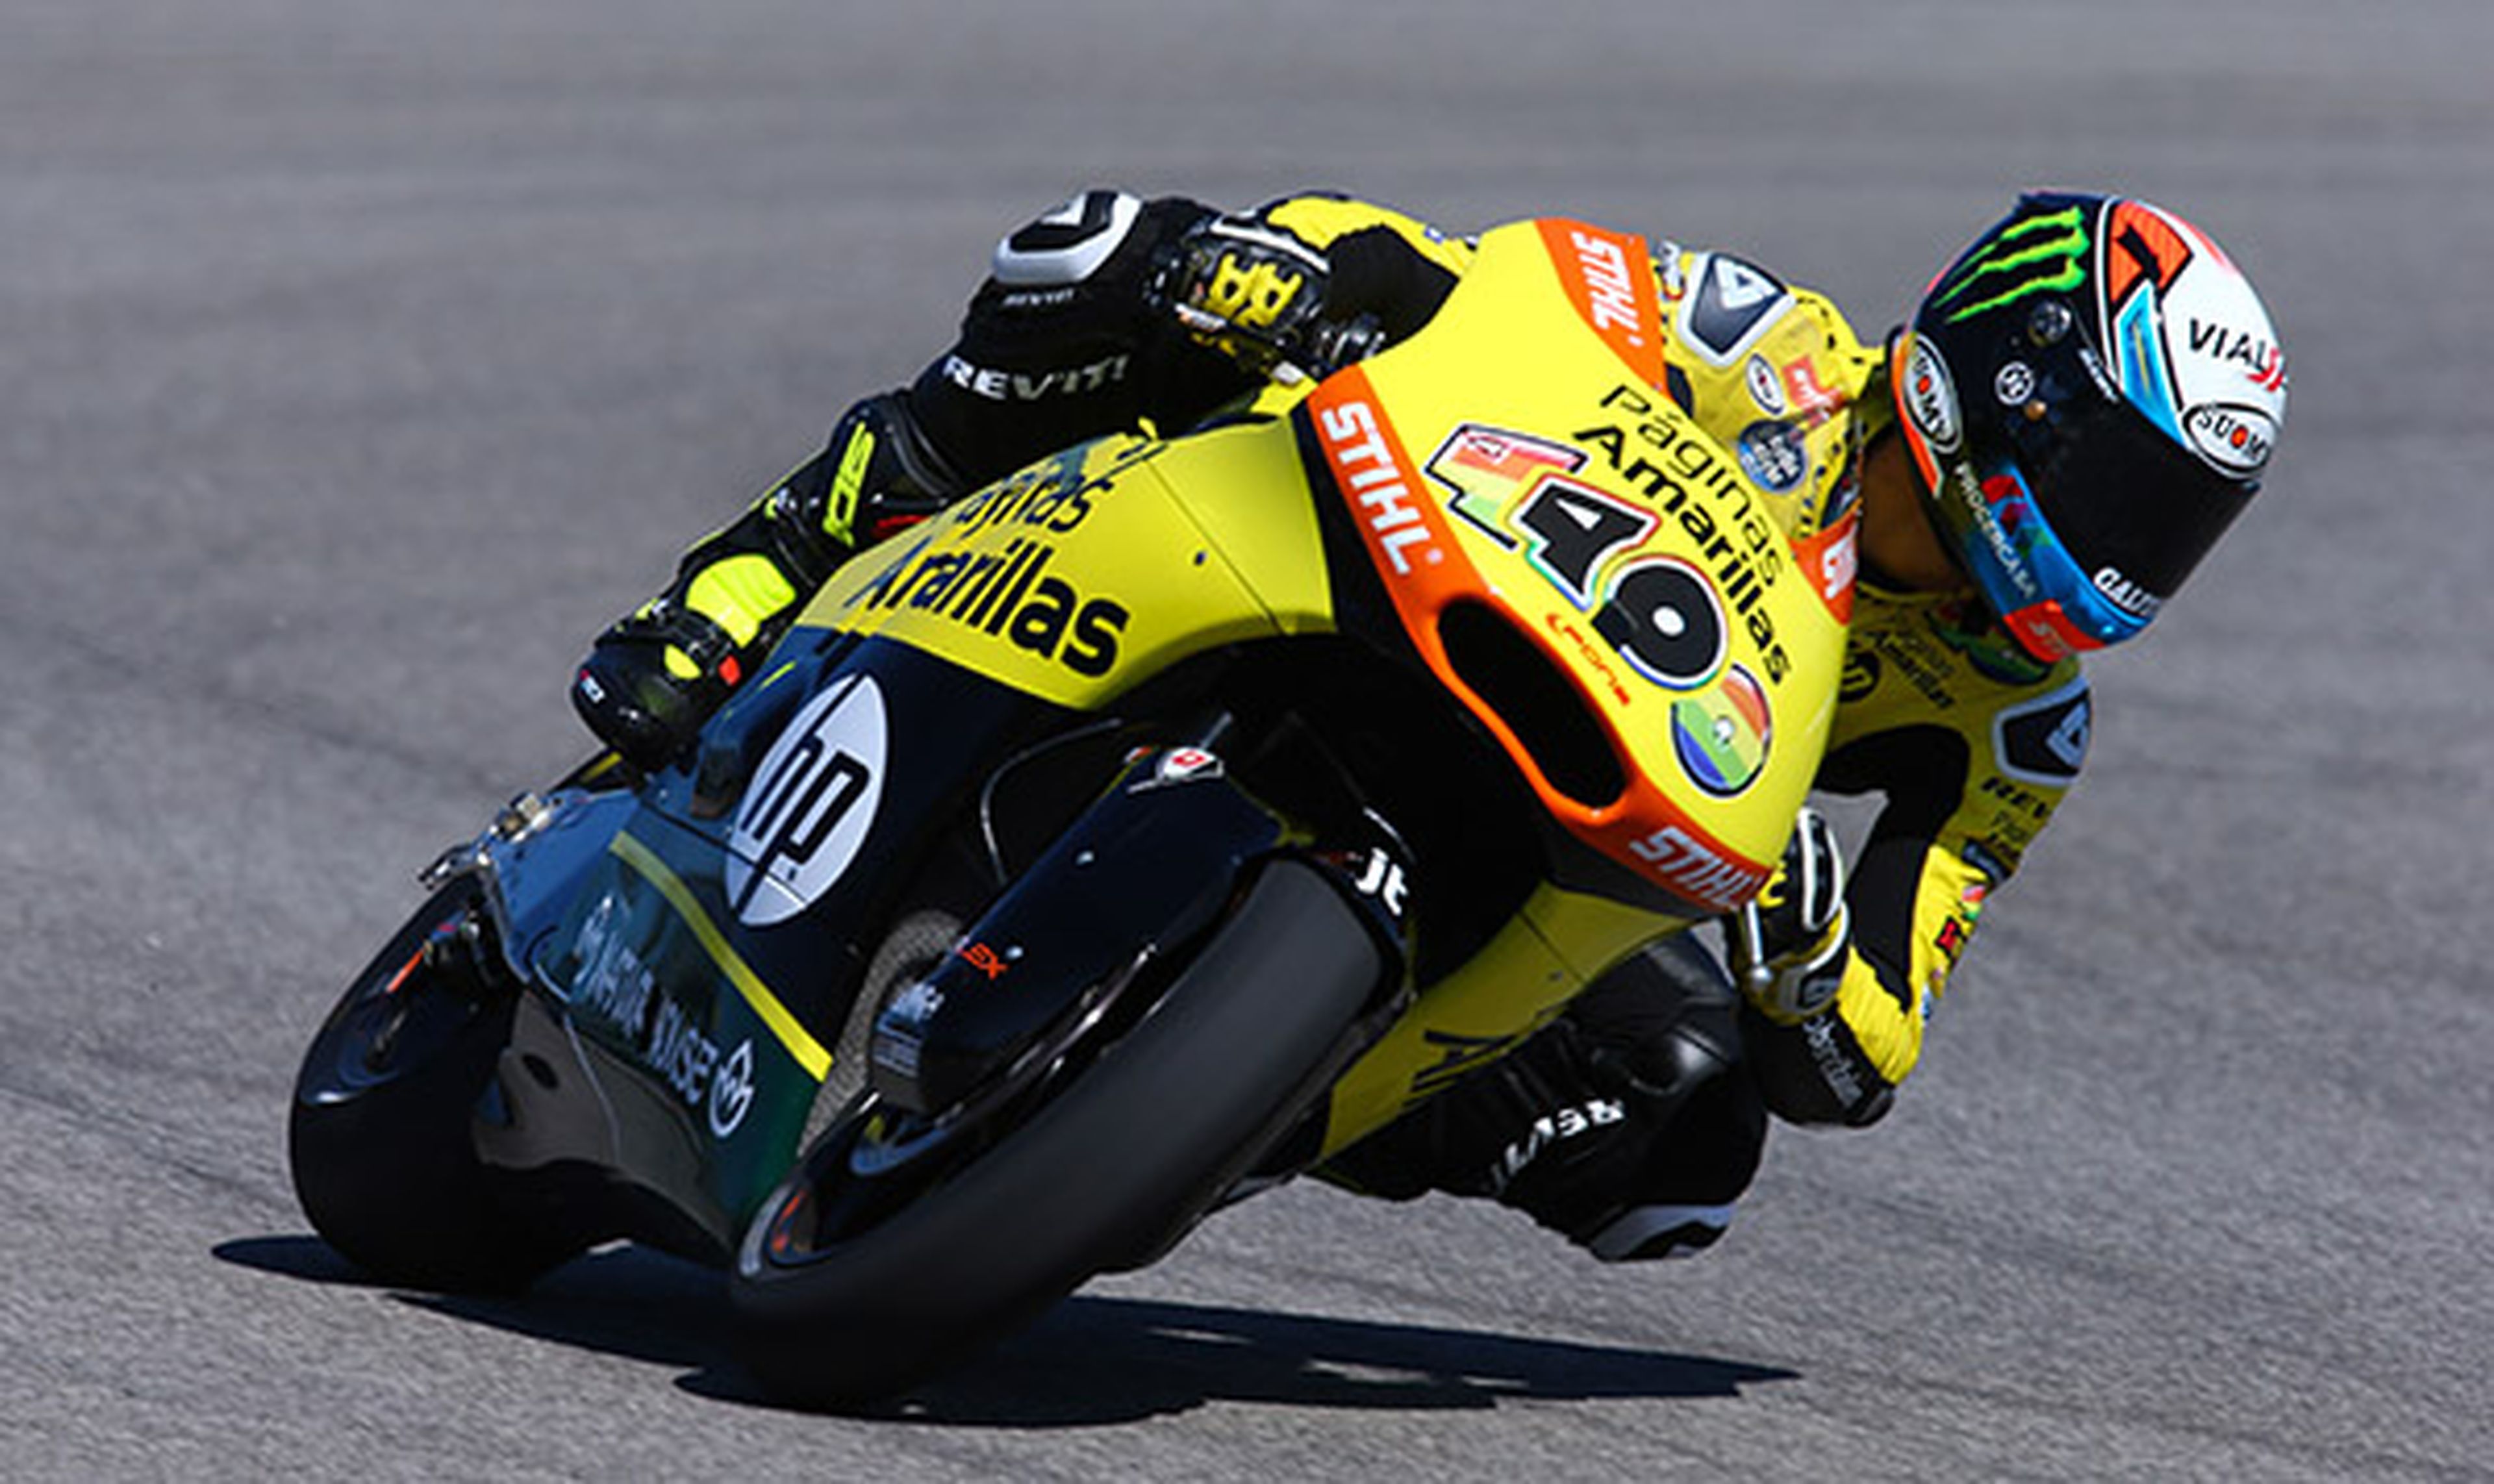 Clasificación Moto2 GP de Indianapolis 2015: Rins sorprende